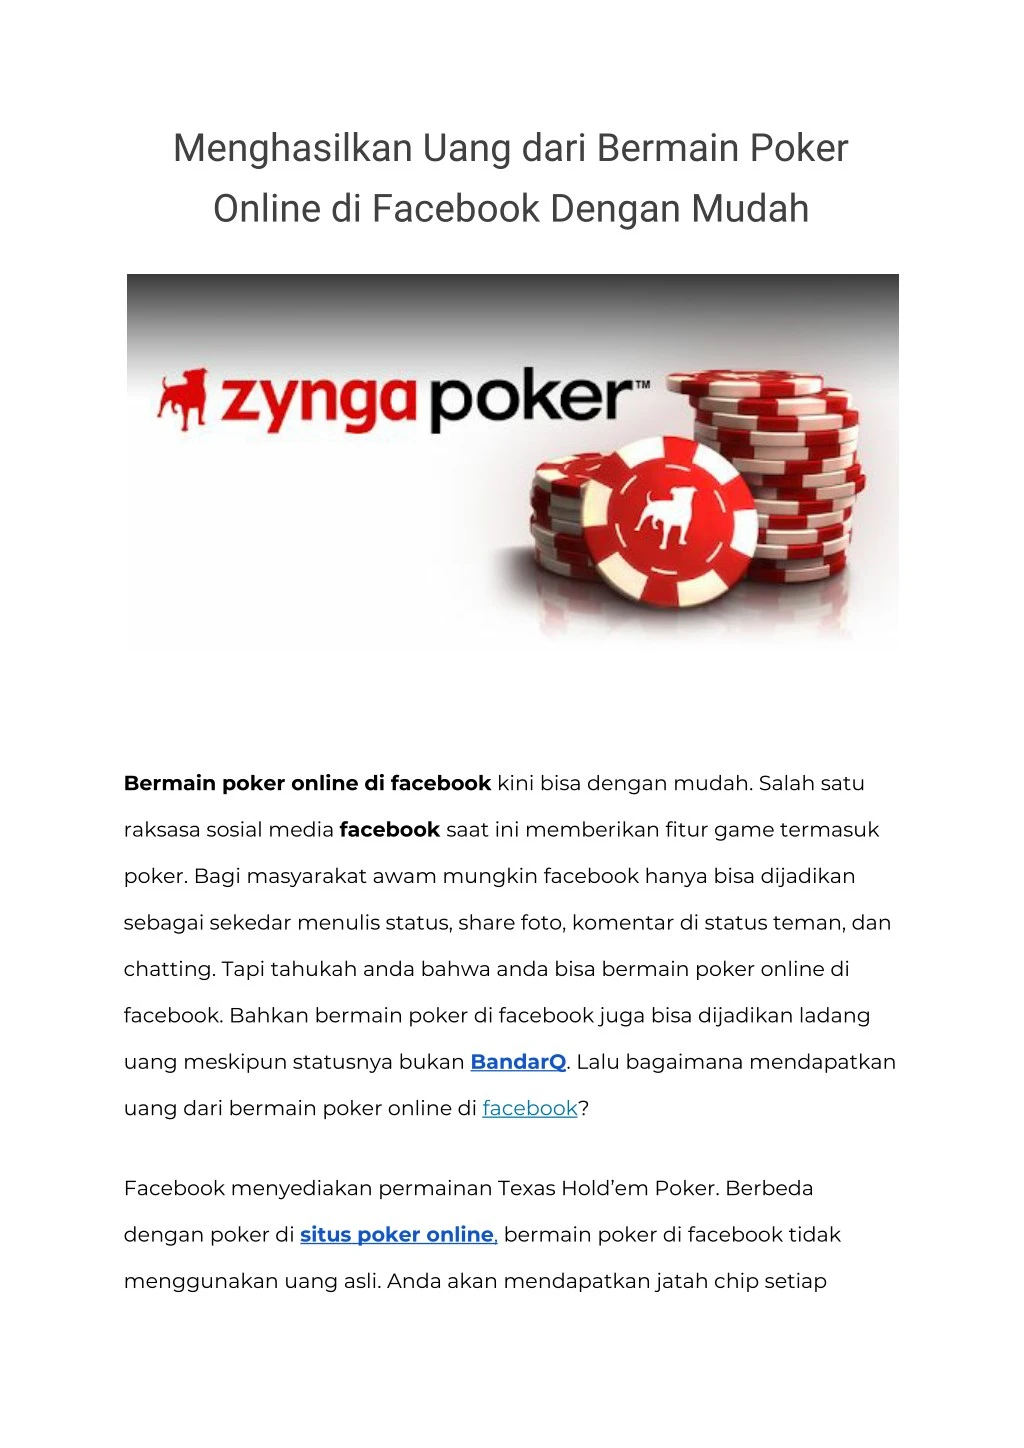 menghasilkan uang dari bermain poker online